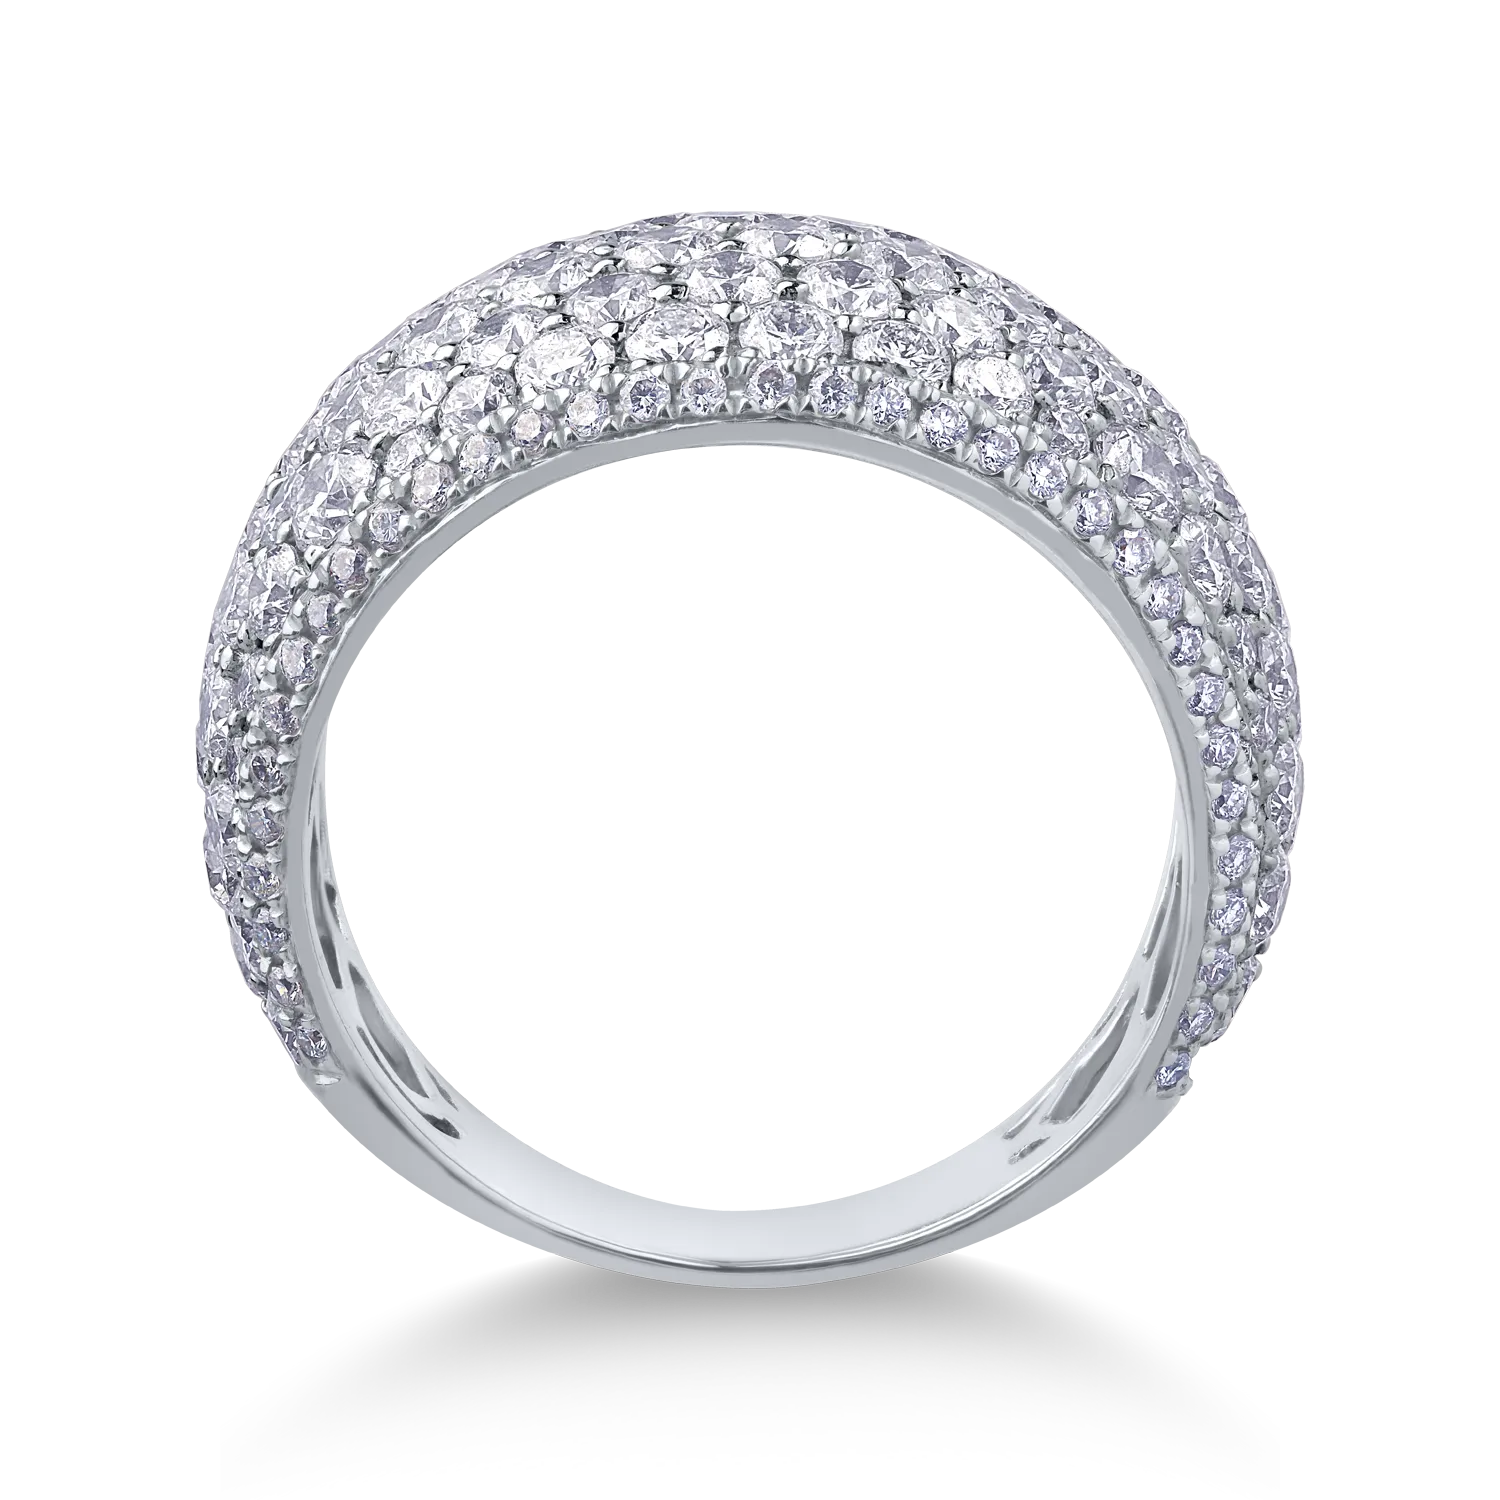 18K fehérarany gyűrű 4.23ct gyémántokkal